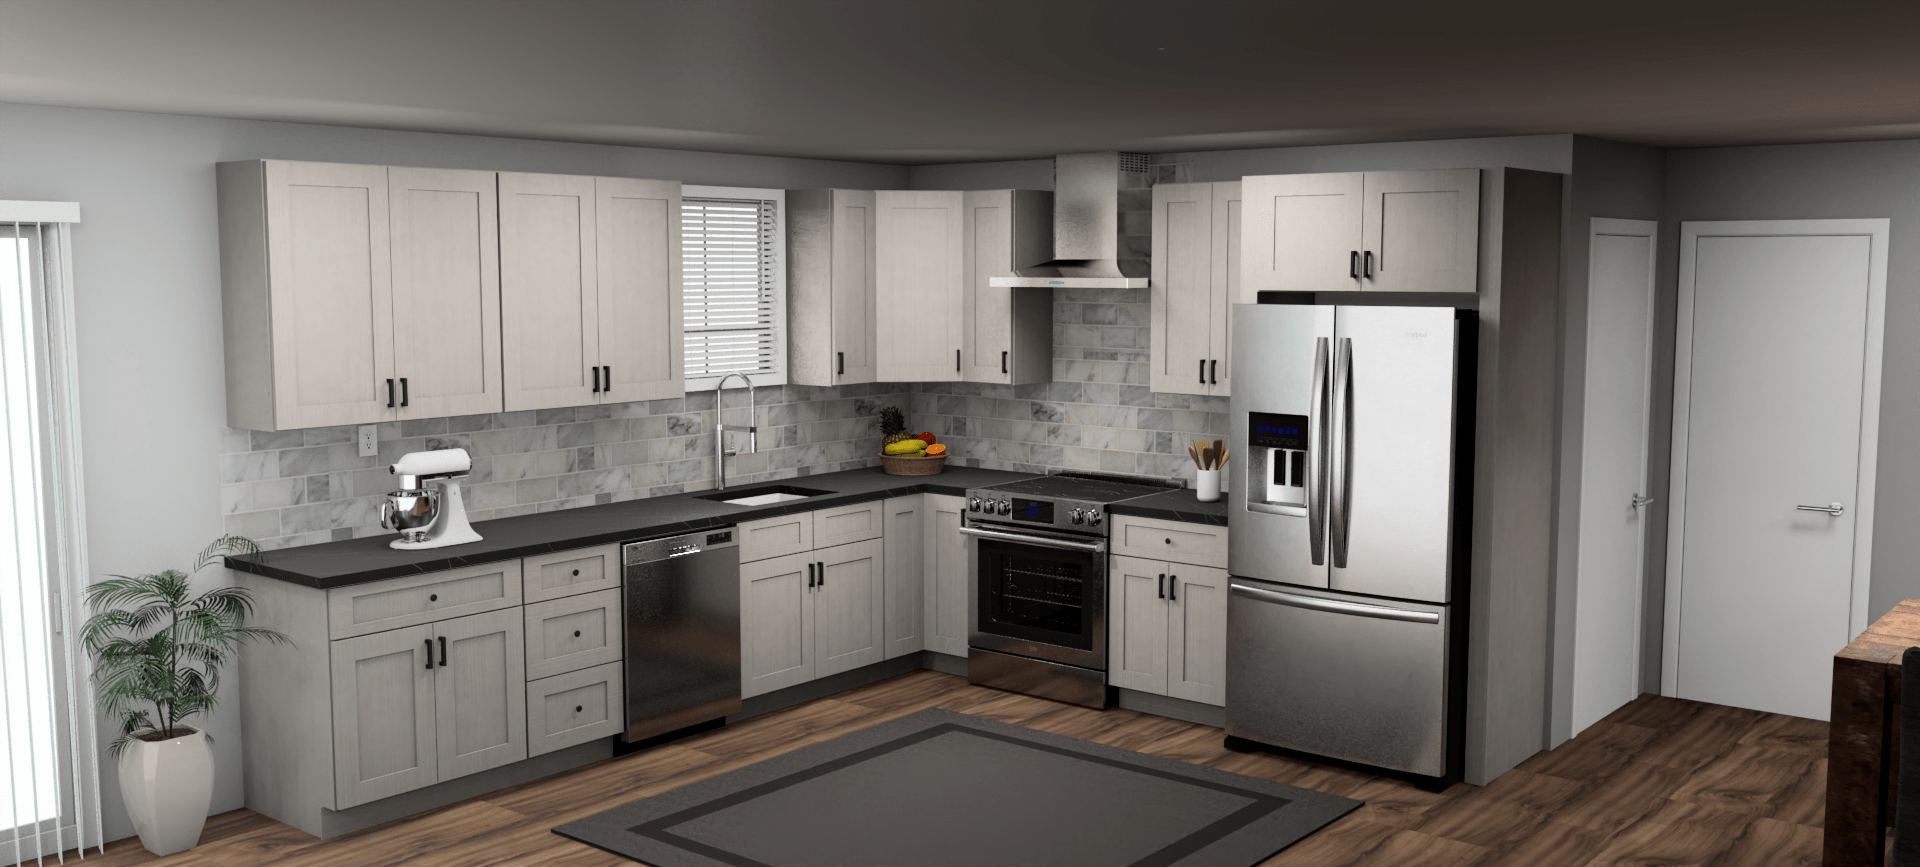 Fabuwood Allure Galaxy Horizon 12 x 11 L Shaped Kitchen Main Layout Photo